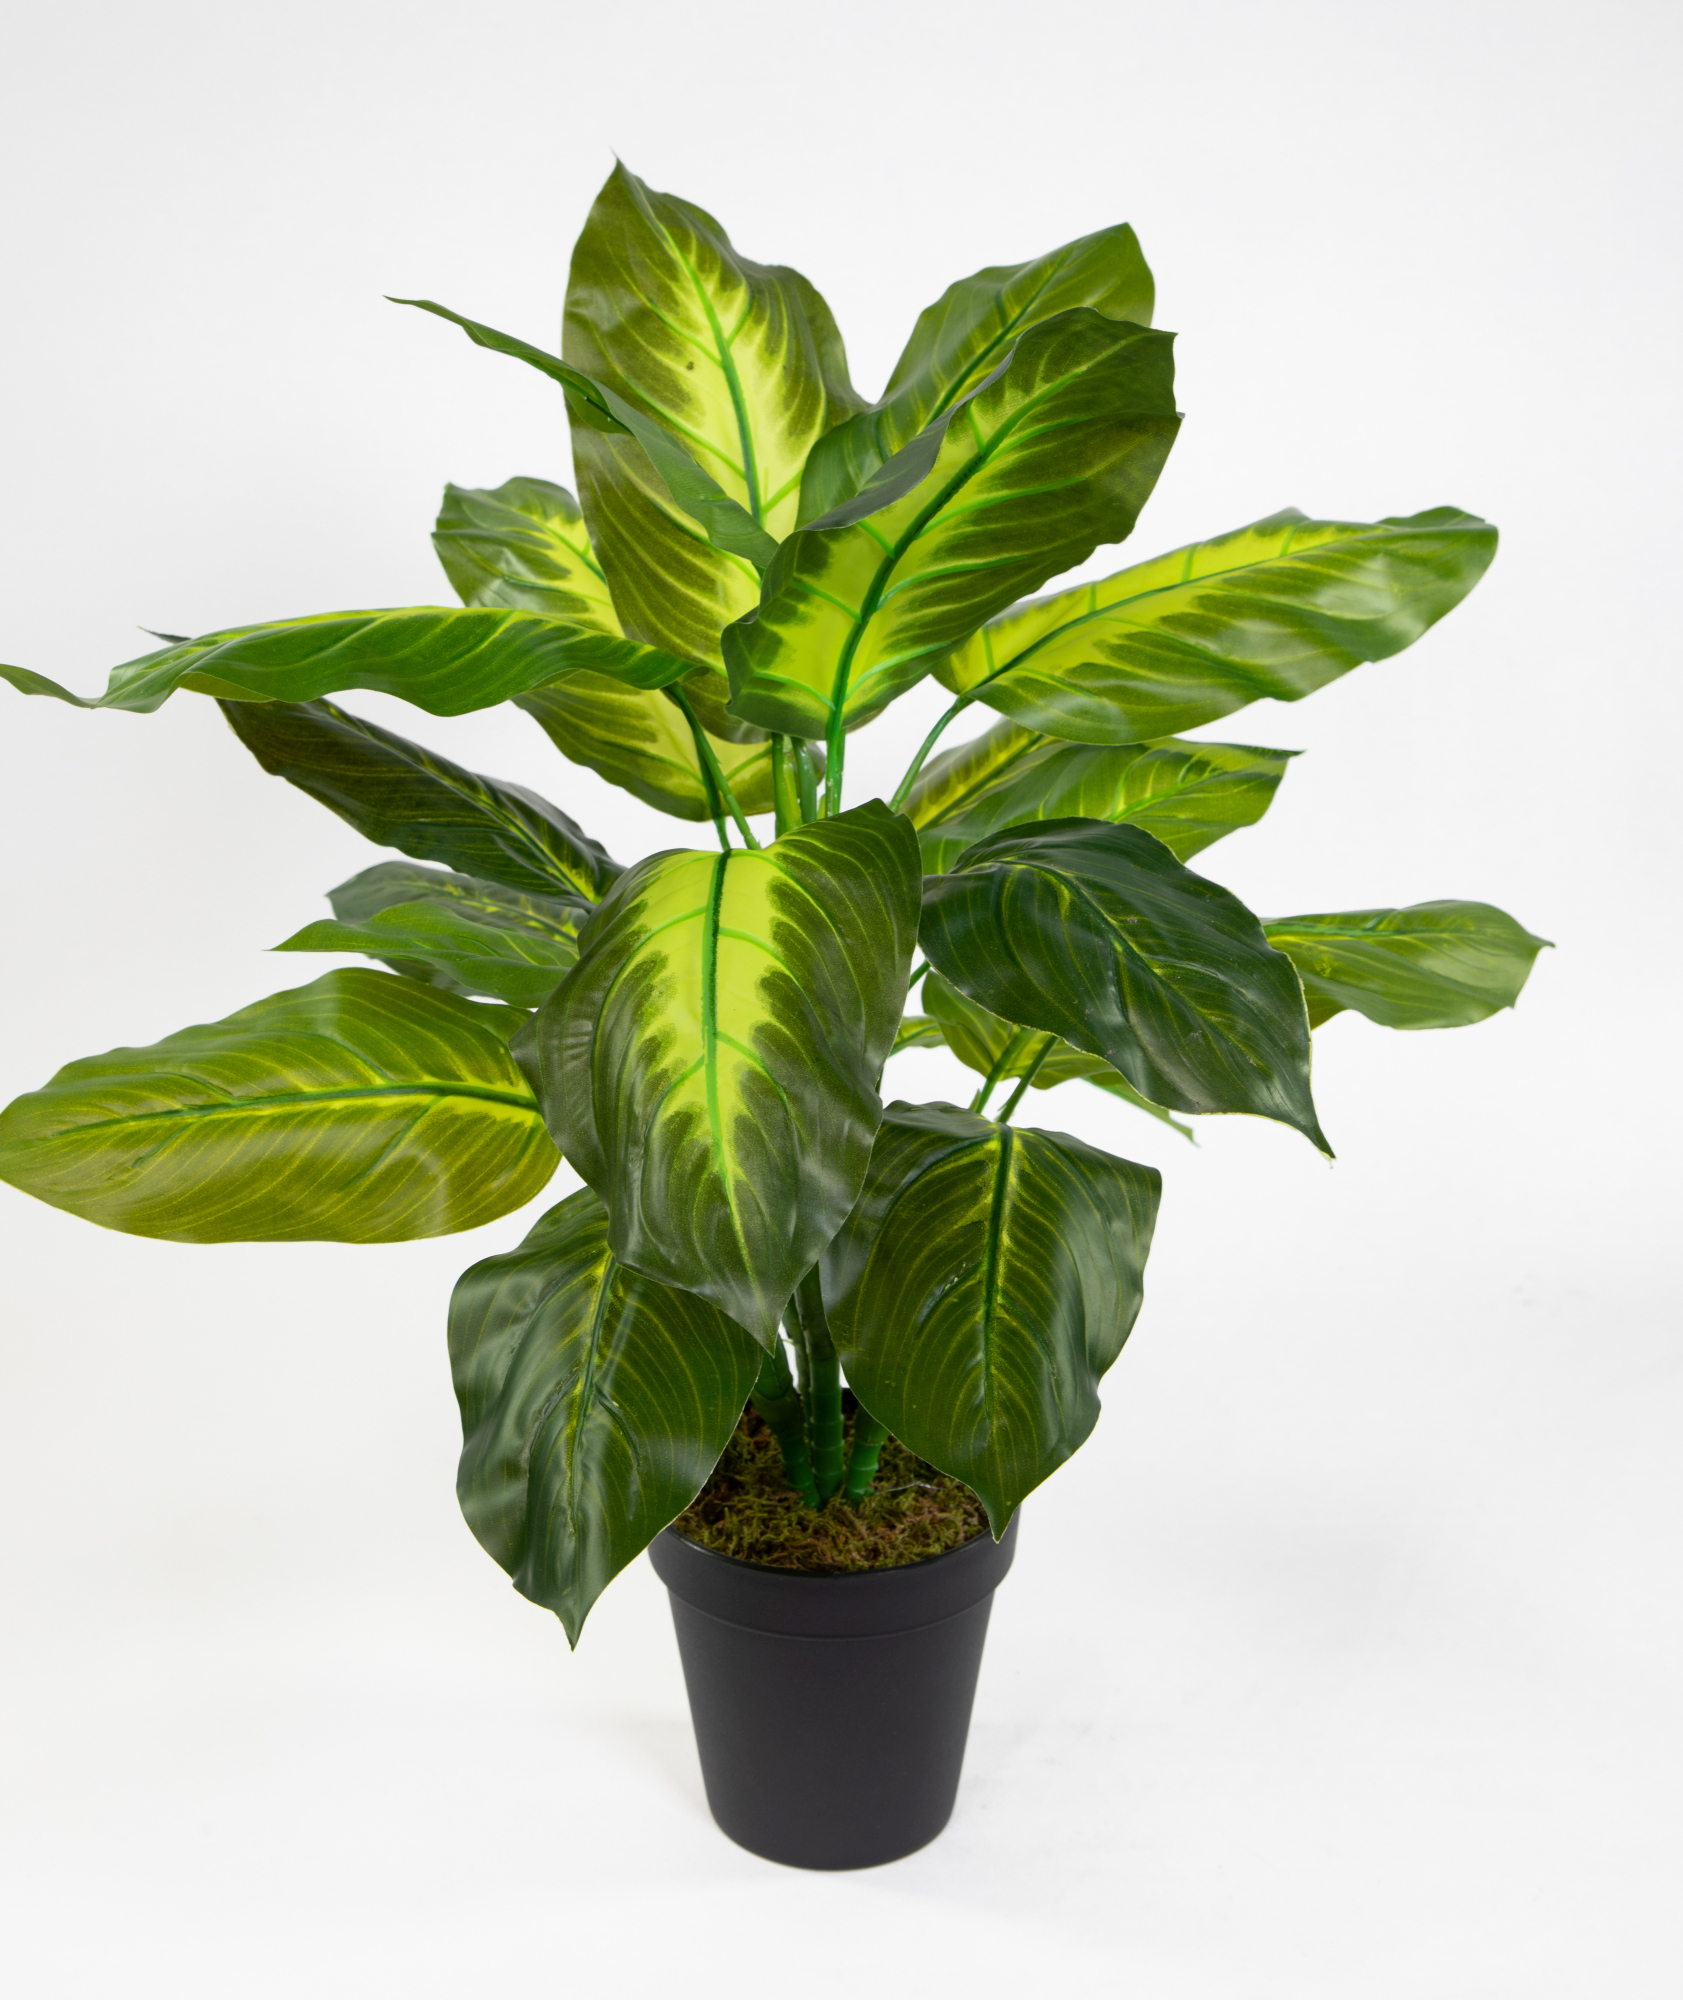 Kunstpflanzen im Touch Philo Philopflanze künstliche Real 52cm ZF Pflanzen Topf grün-hellgrün